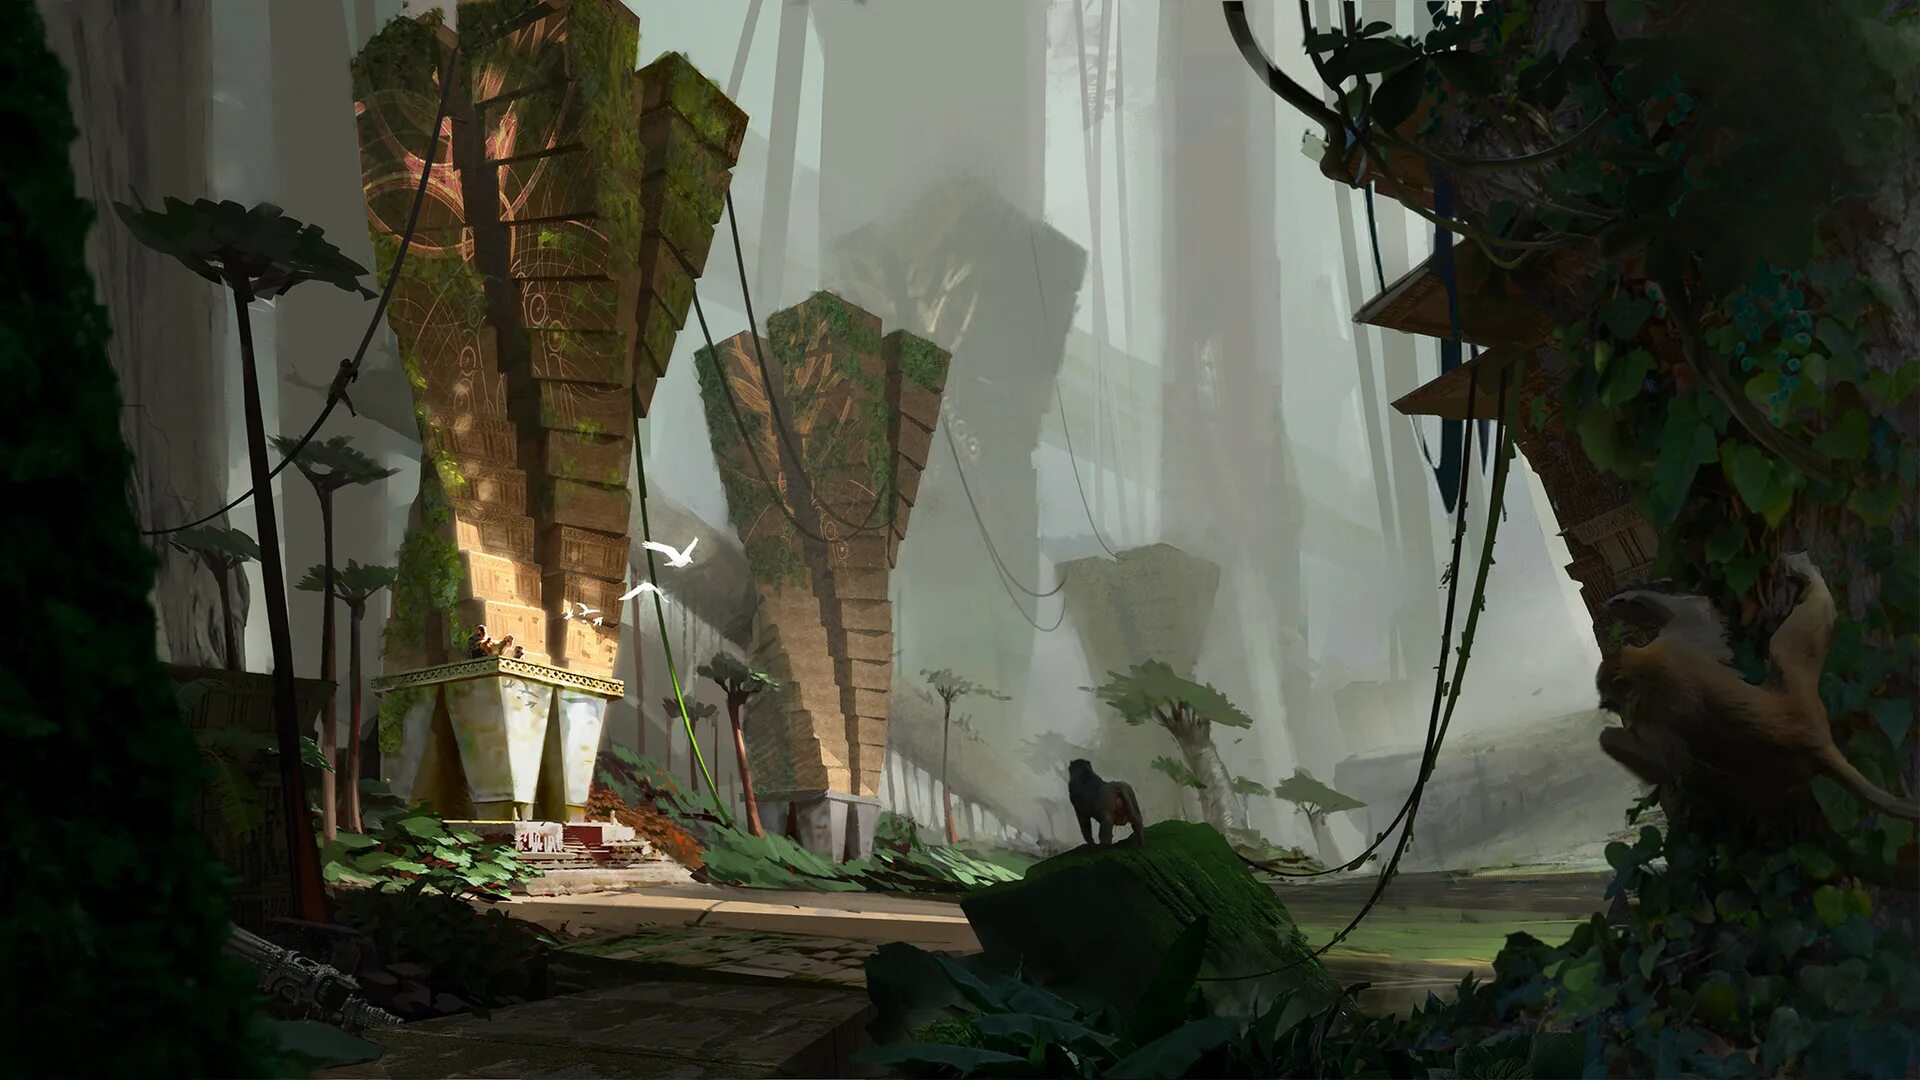 Natural concept. Лаборатория в джунглях. Локация джунгли. Город в джунглях фэнтези. Развалины в джунглях.